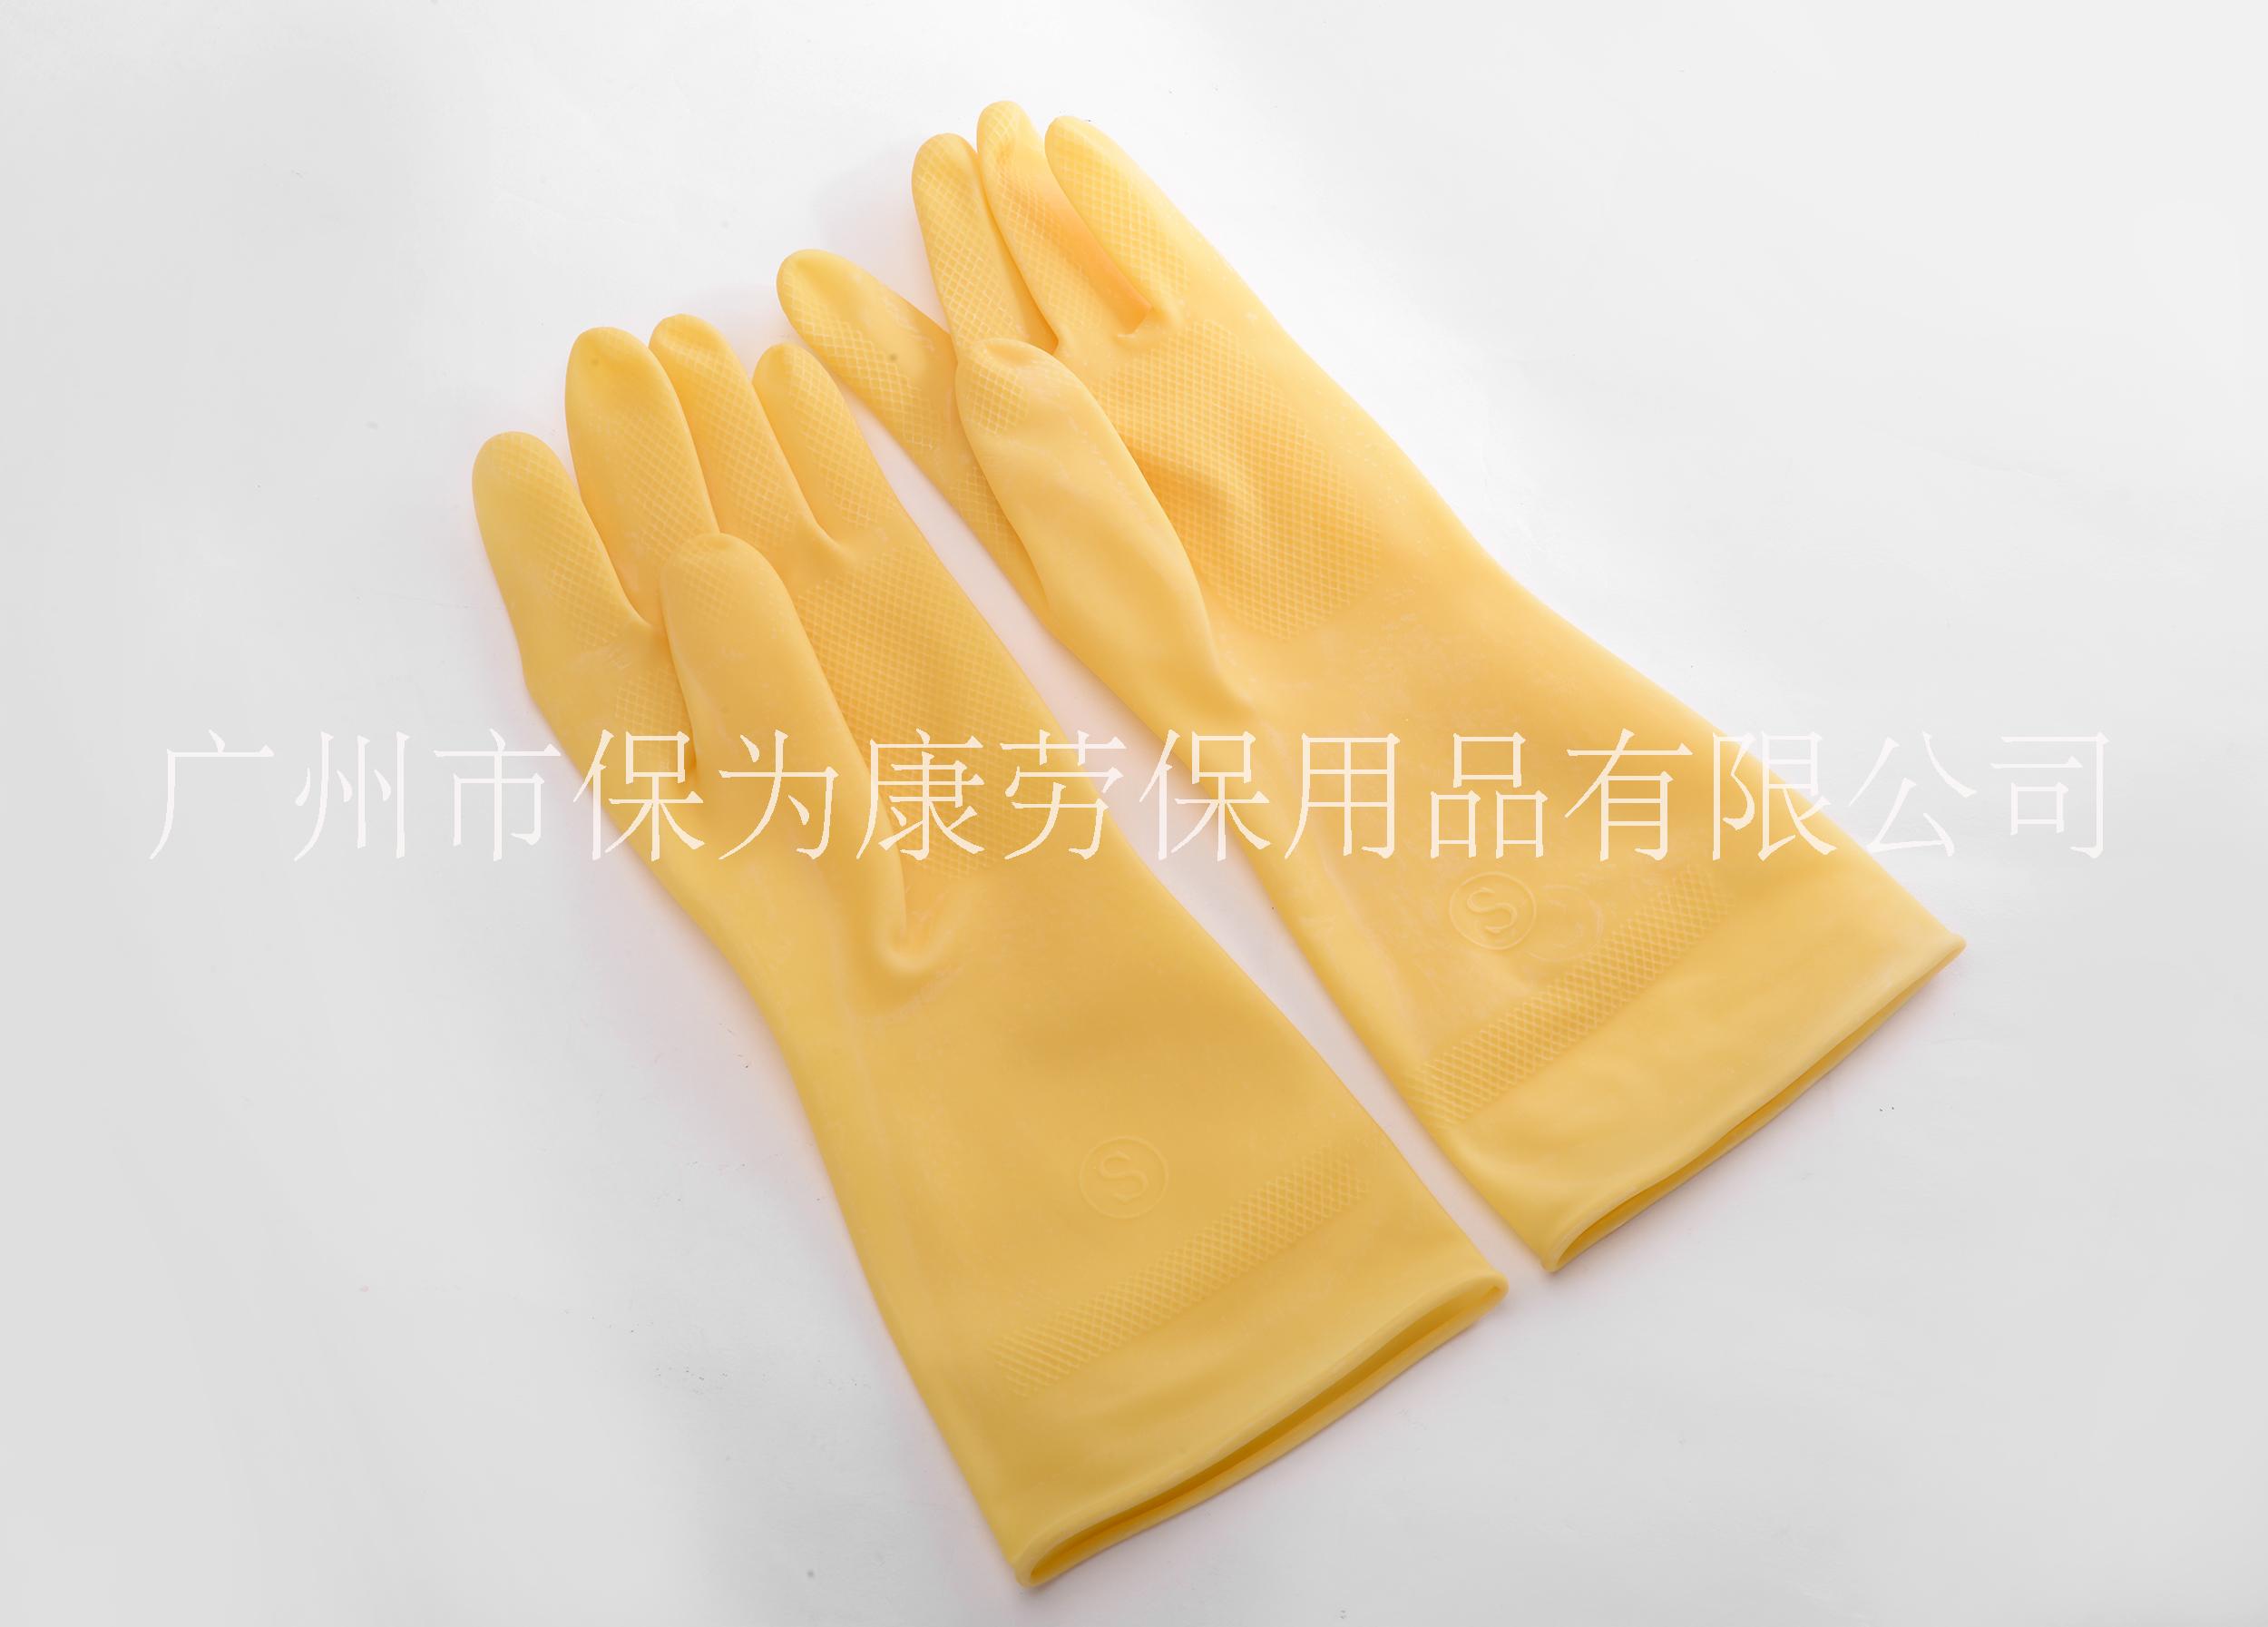 厂家直销保为康加厚乳胶防酸碱抗毒防污家用清洁工业用手套批发k001 k001乳胶手套